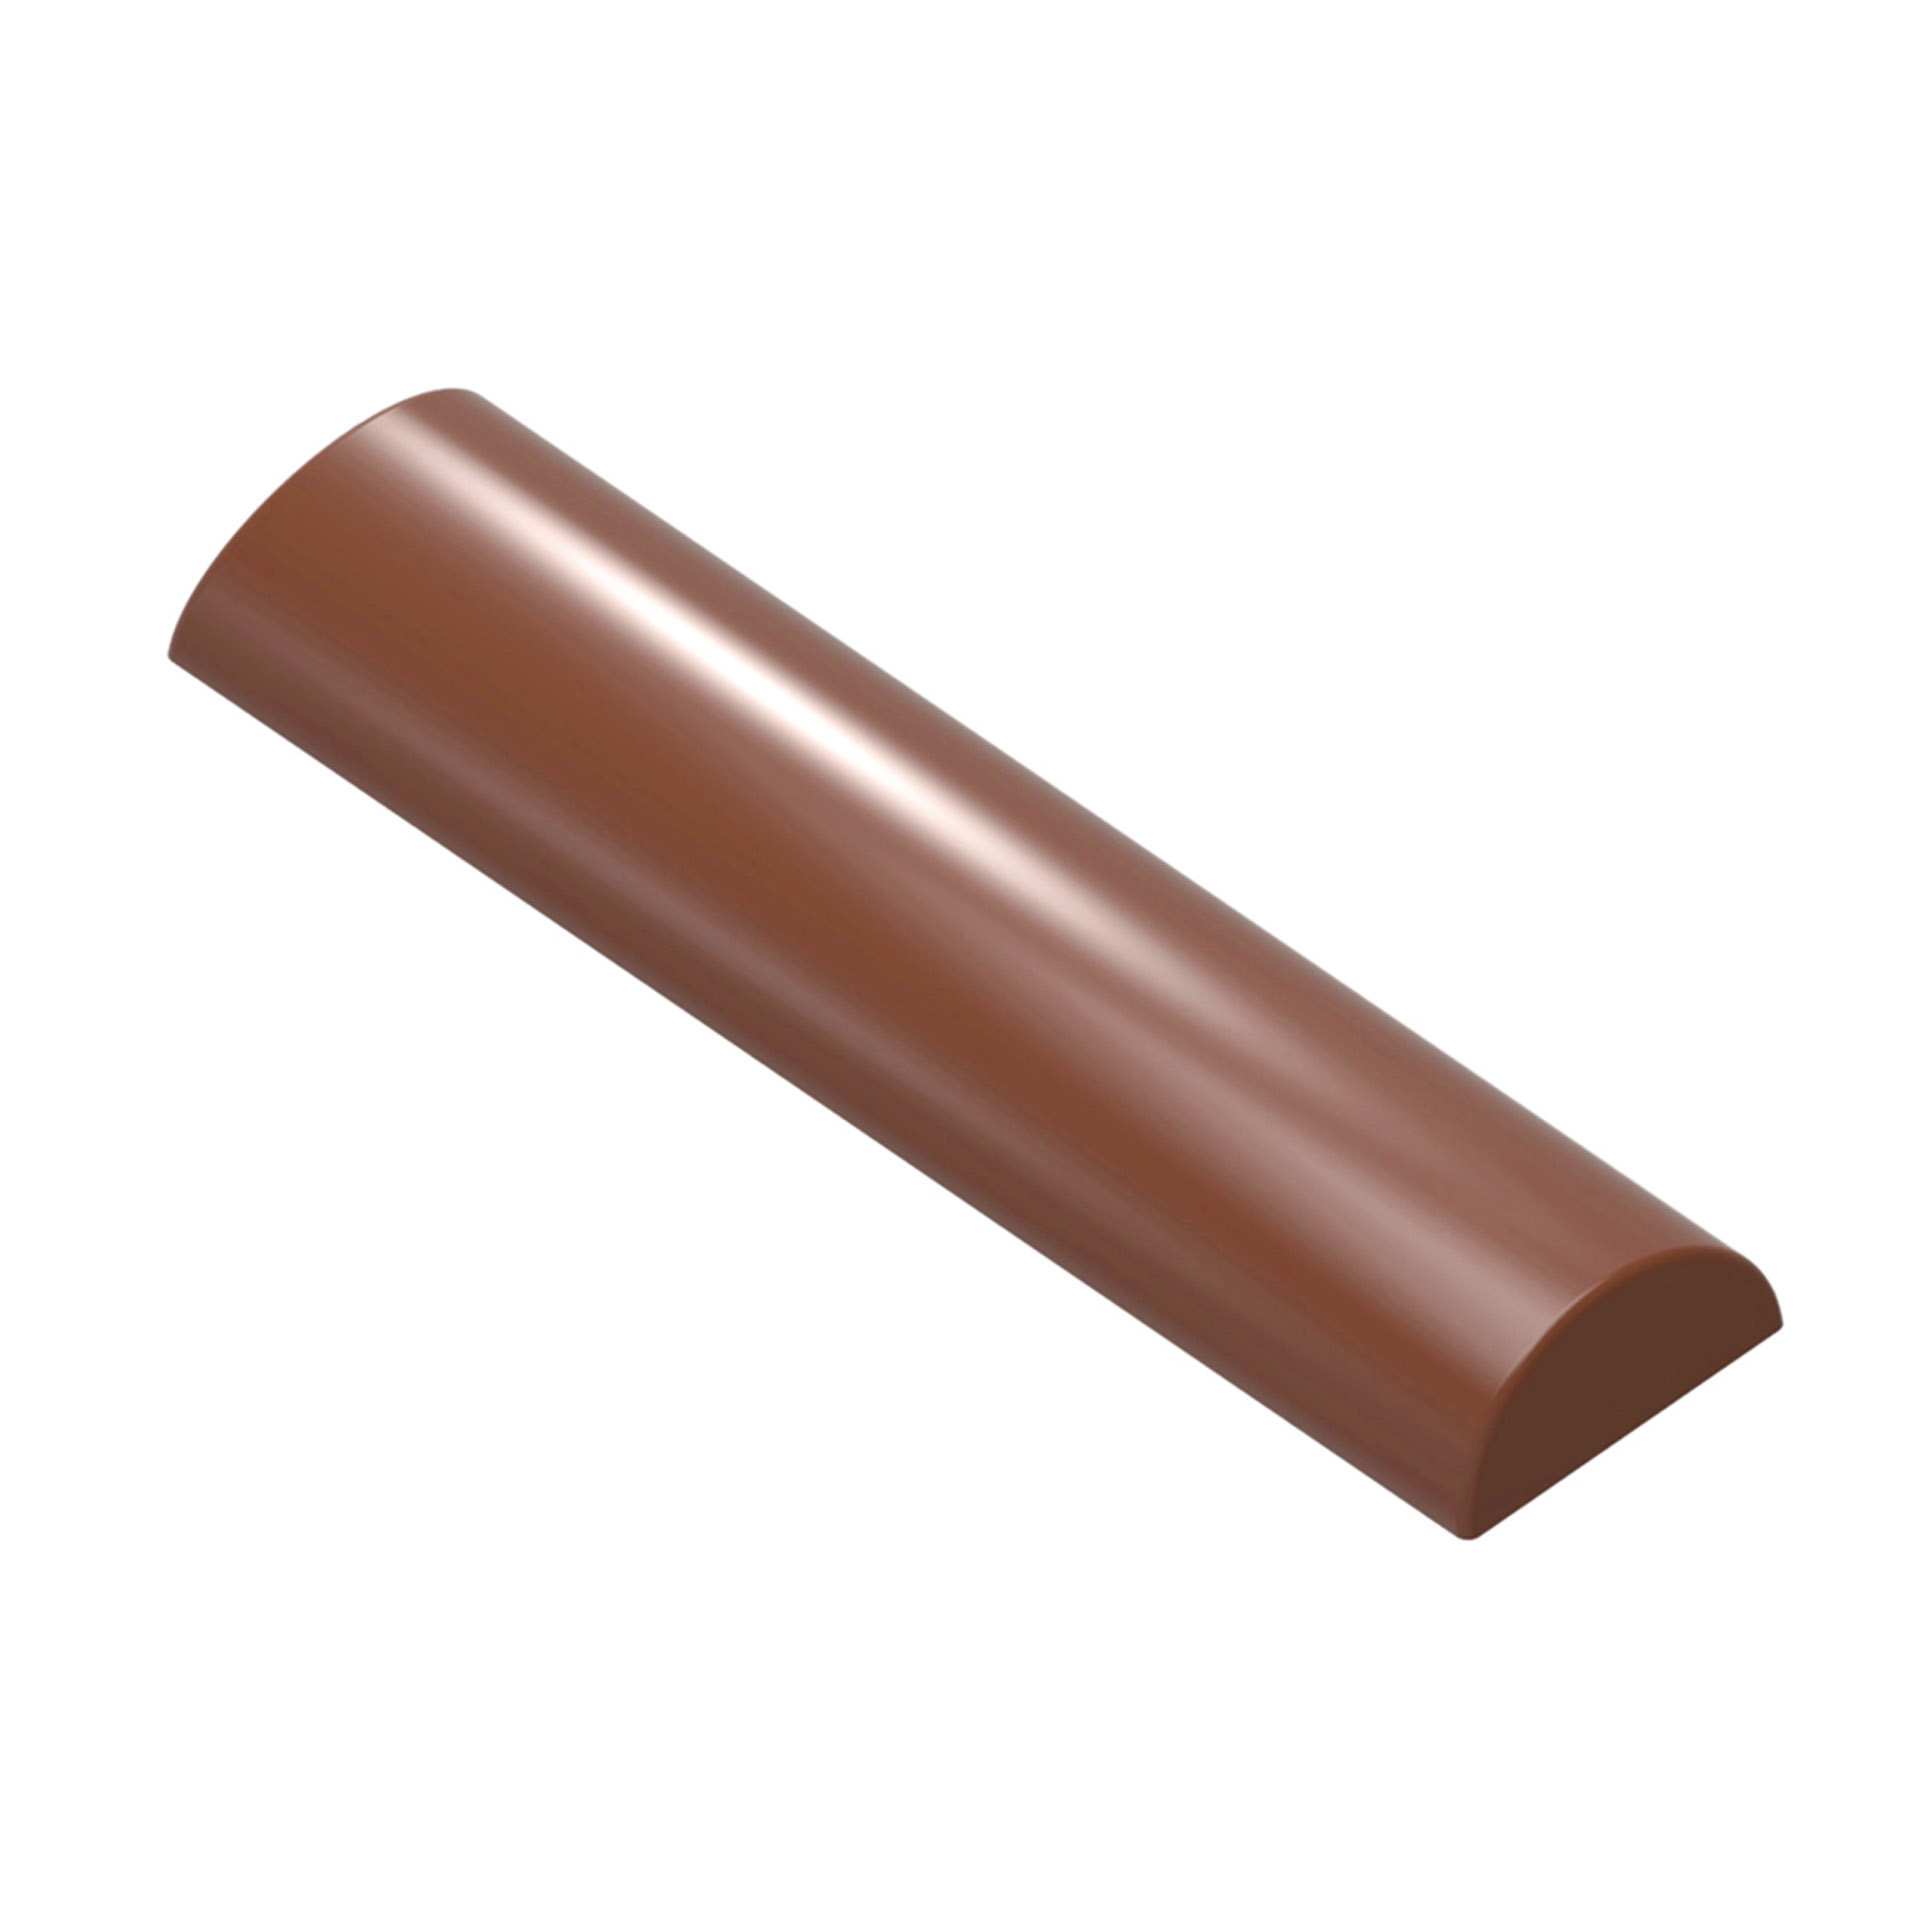 Schokoladen-Form - Buche glatt - Abm. 27,5 x 13,5 x 2,4 cm - Polycarbonat - 421908-C